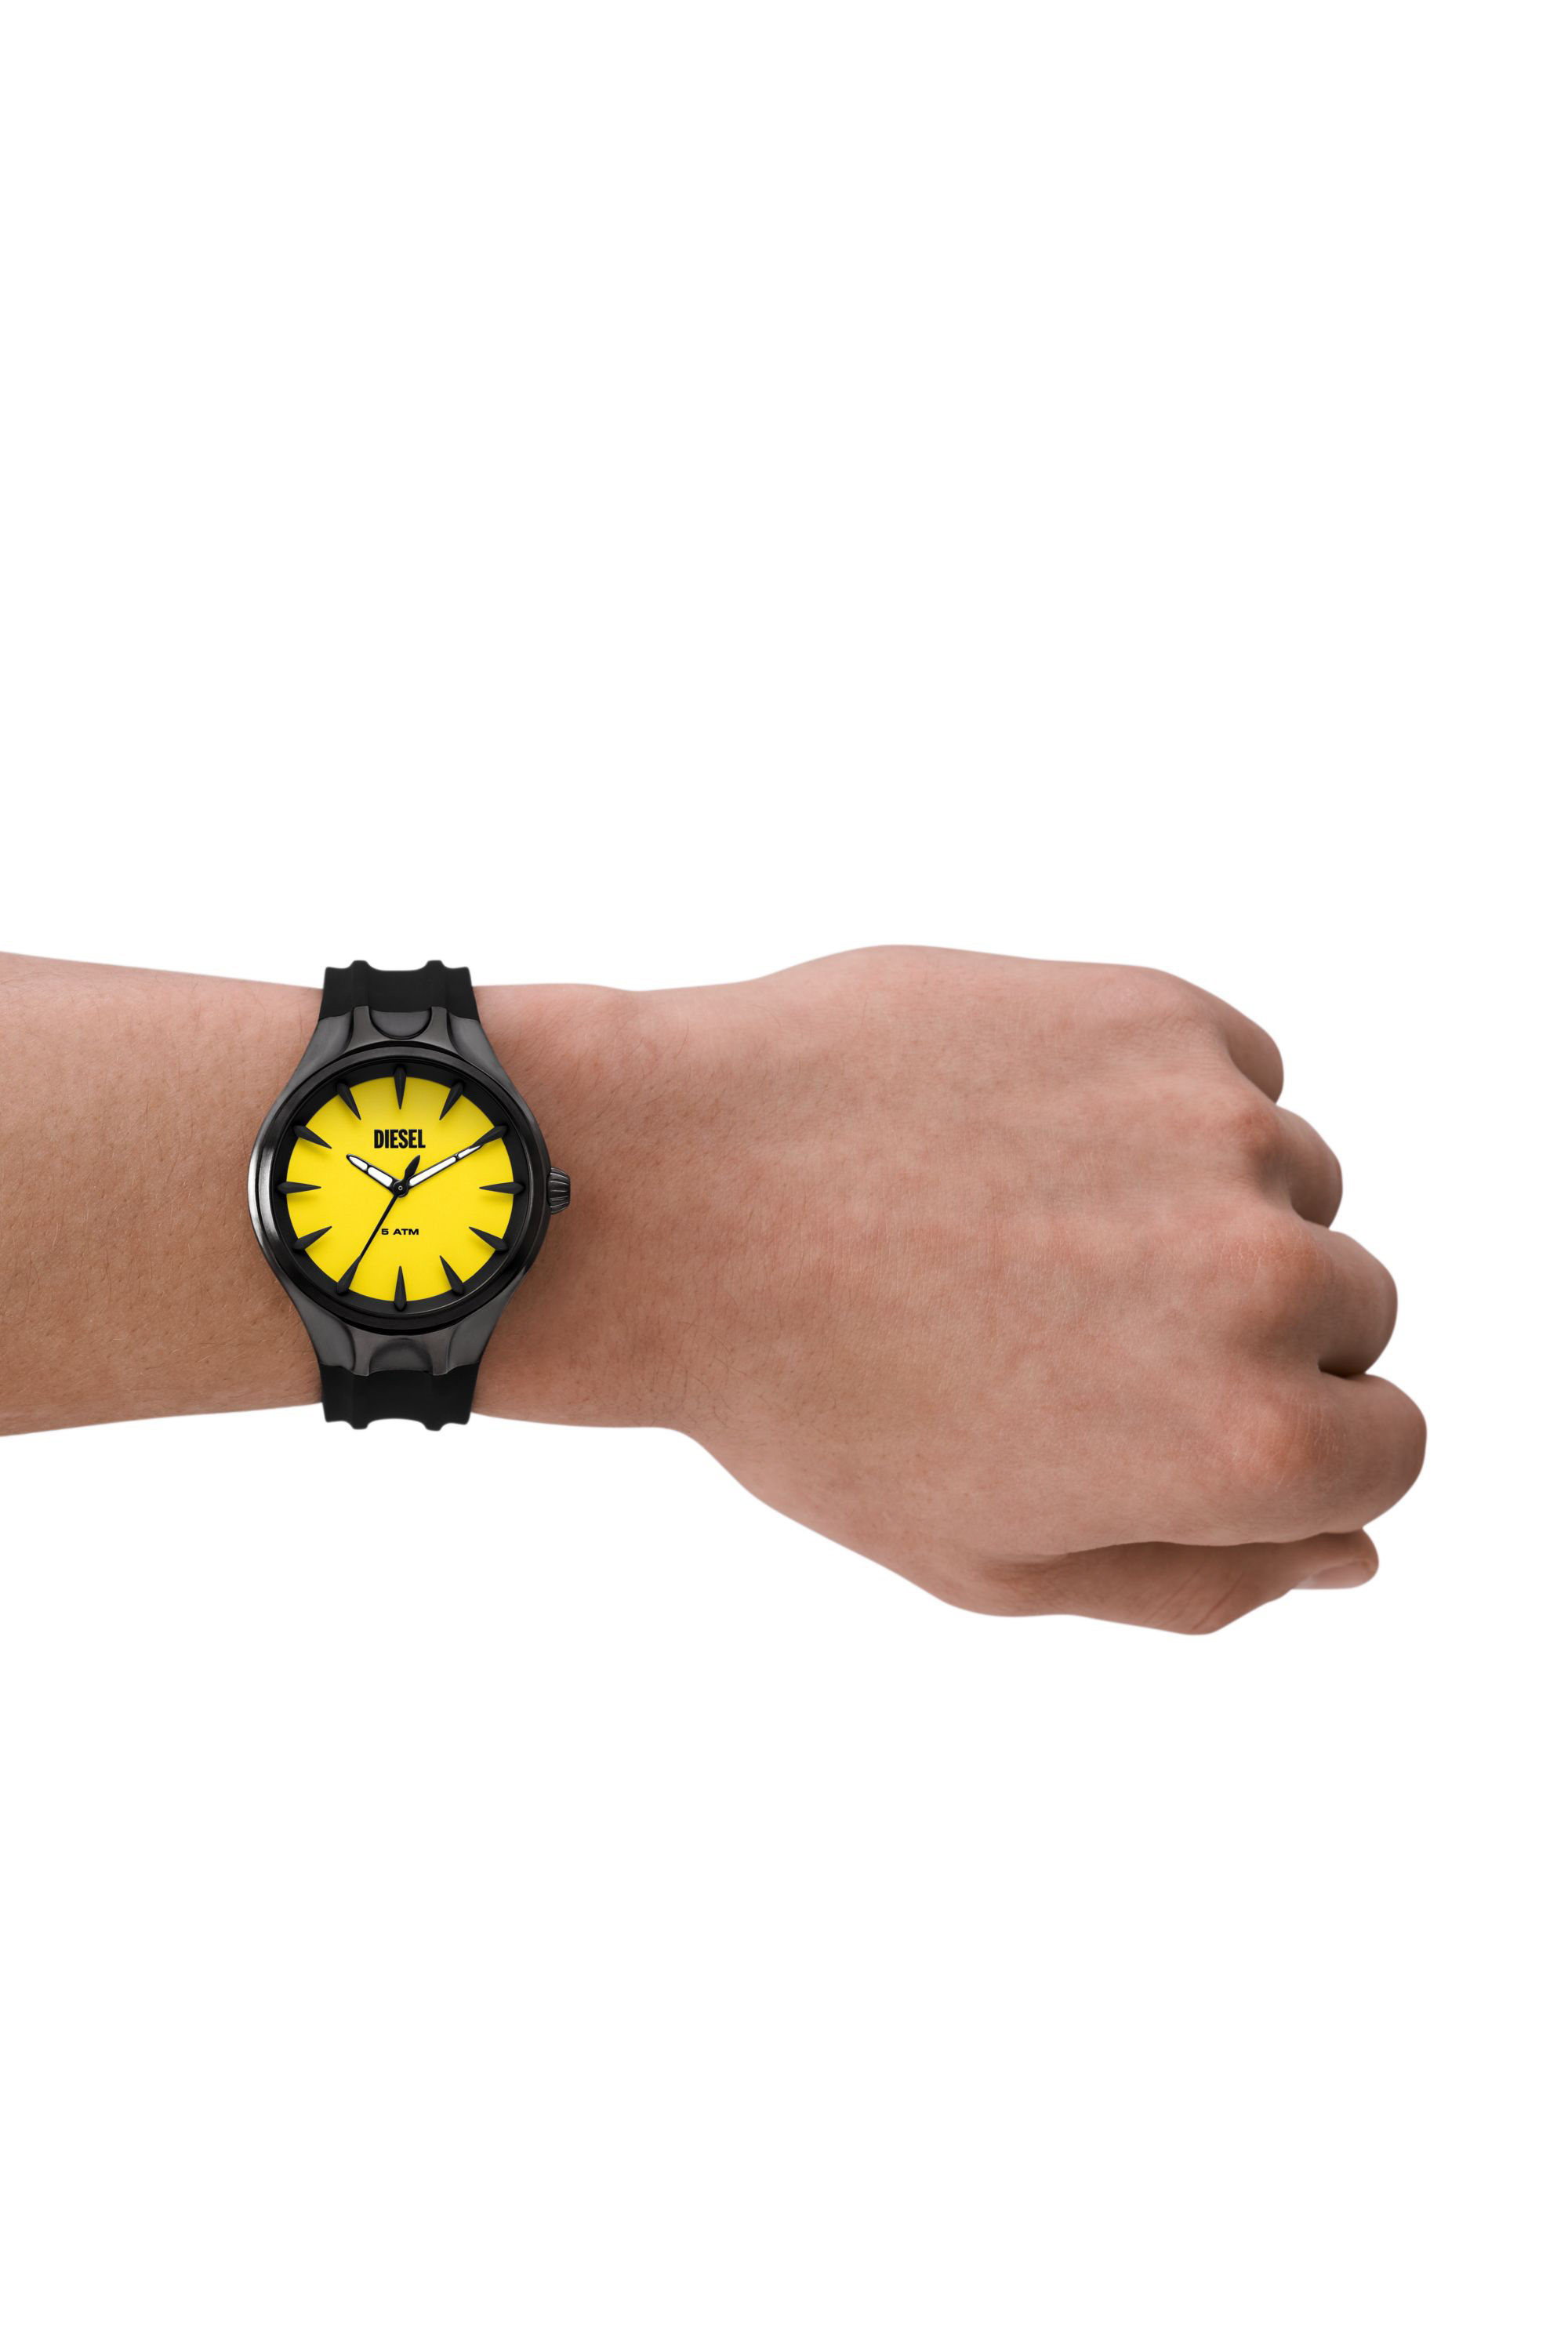 Diesel - DZ2201, Male Streamline three-hand black silicone watch in Black - Image 4